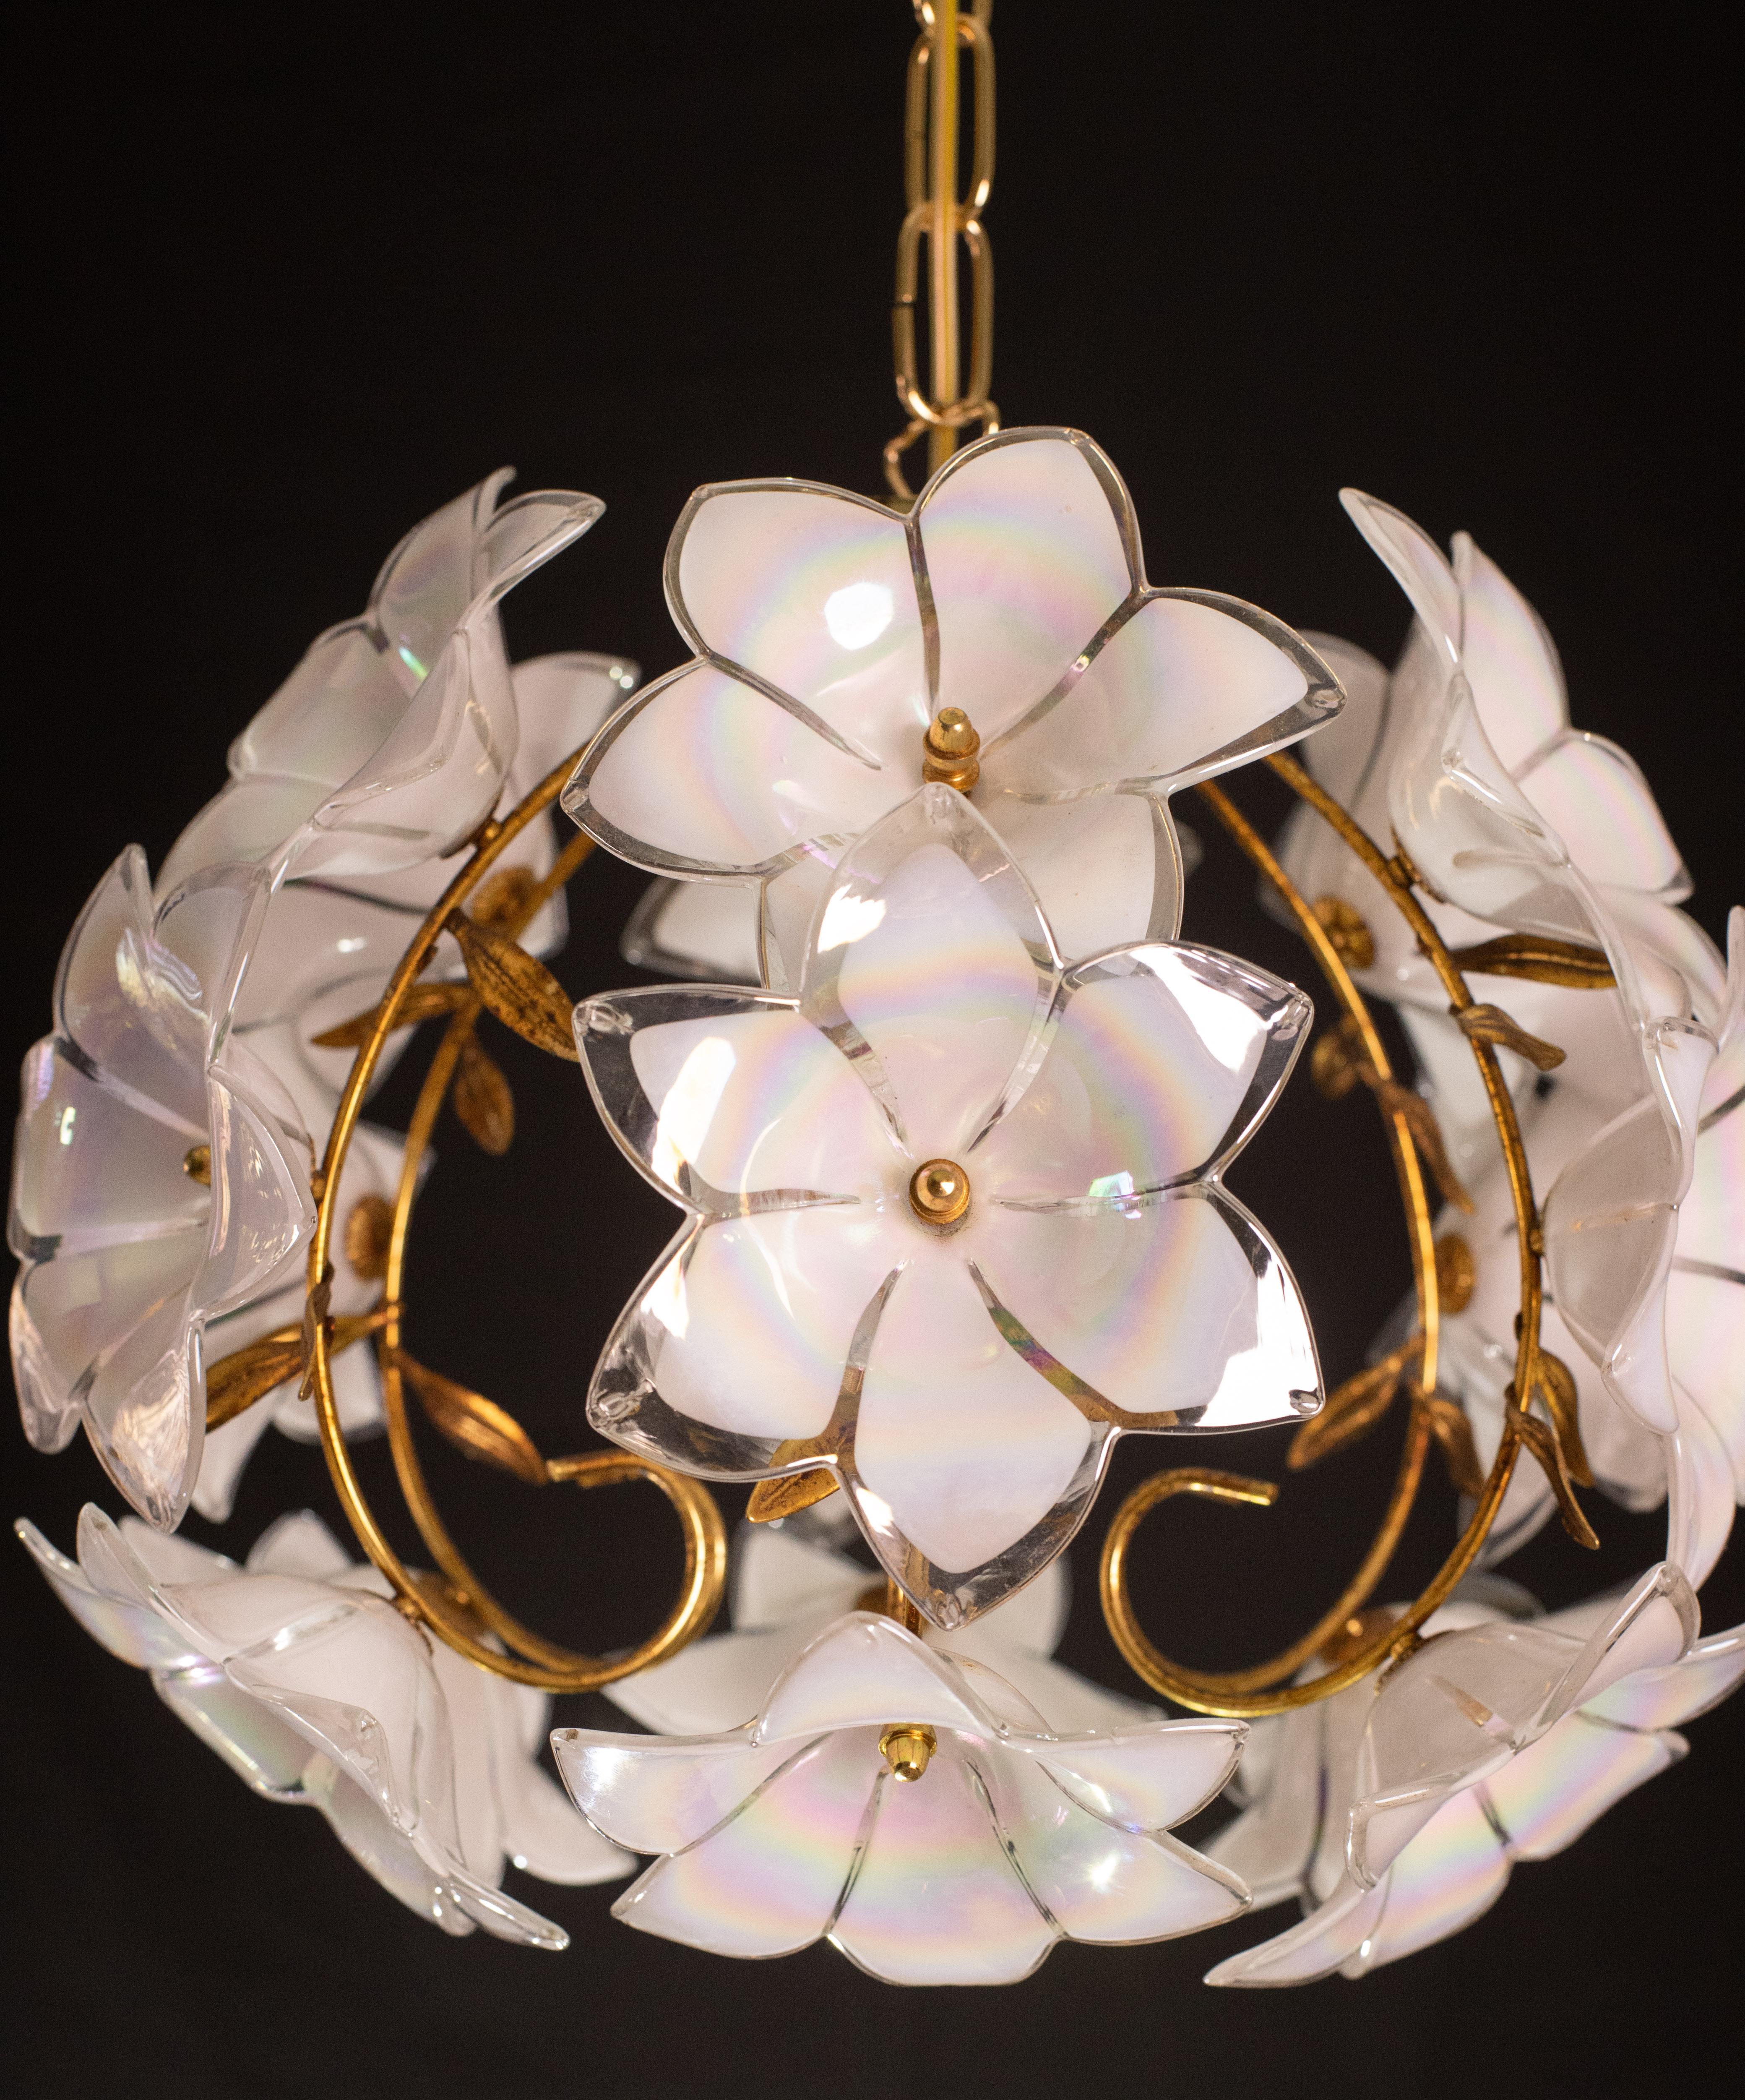 Set of 2 Murano Spherical Chandelier Full of White Flowers, 1980s For Sale 5